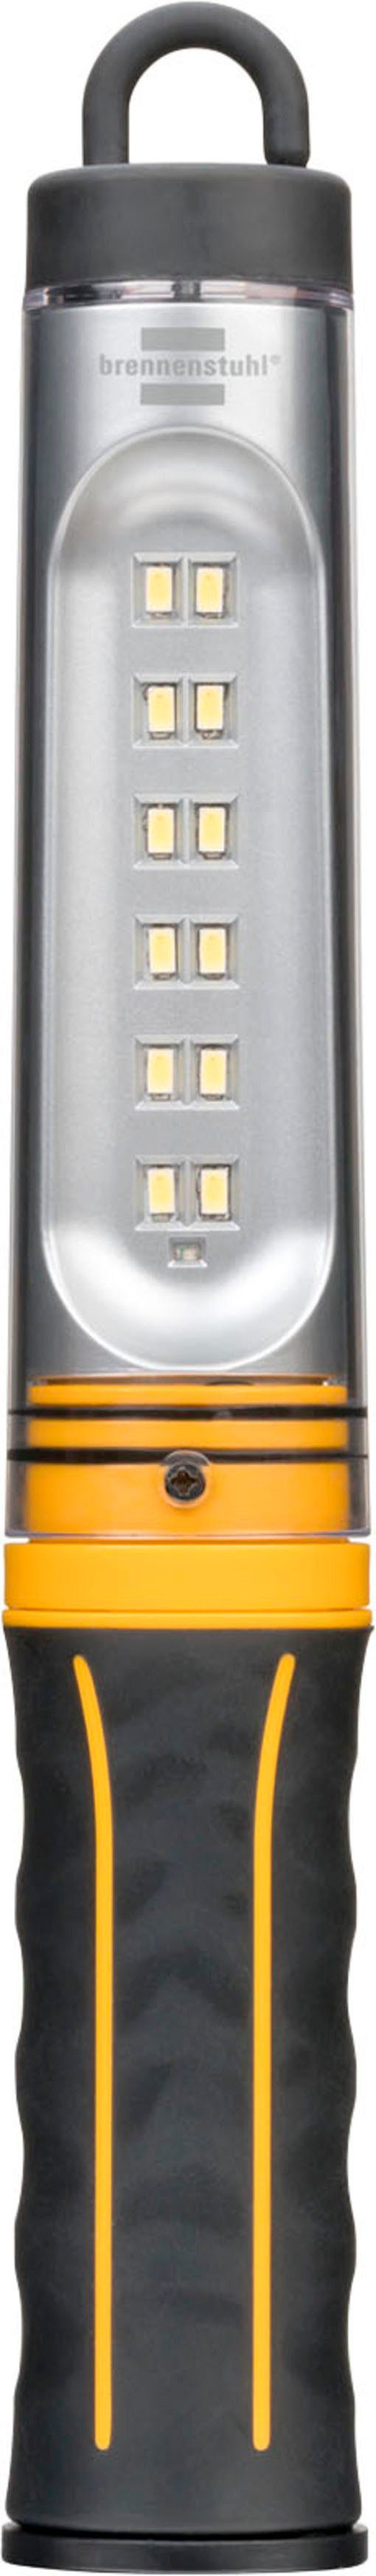 USB-Kabel Brennenstuhl mit 500 A, WL integriertem und Handleuchte Akku